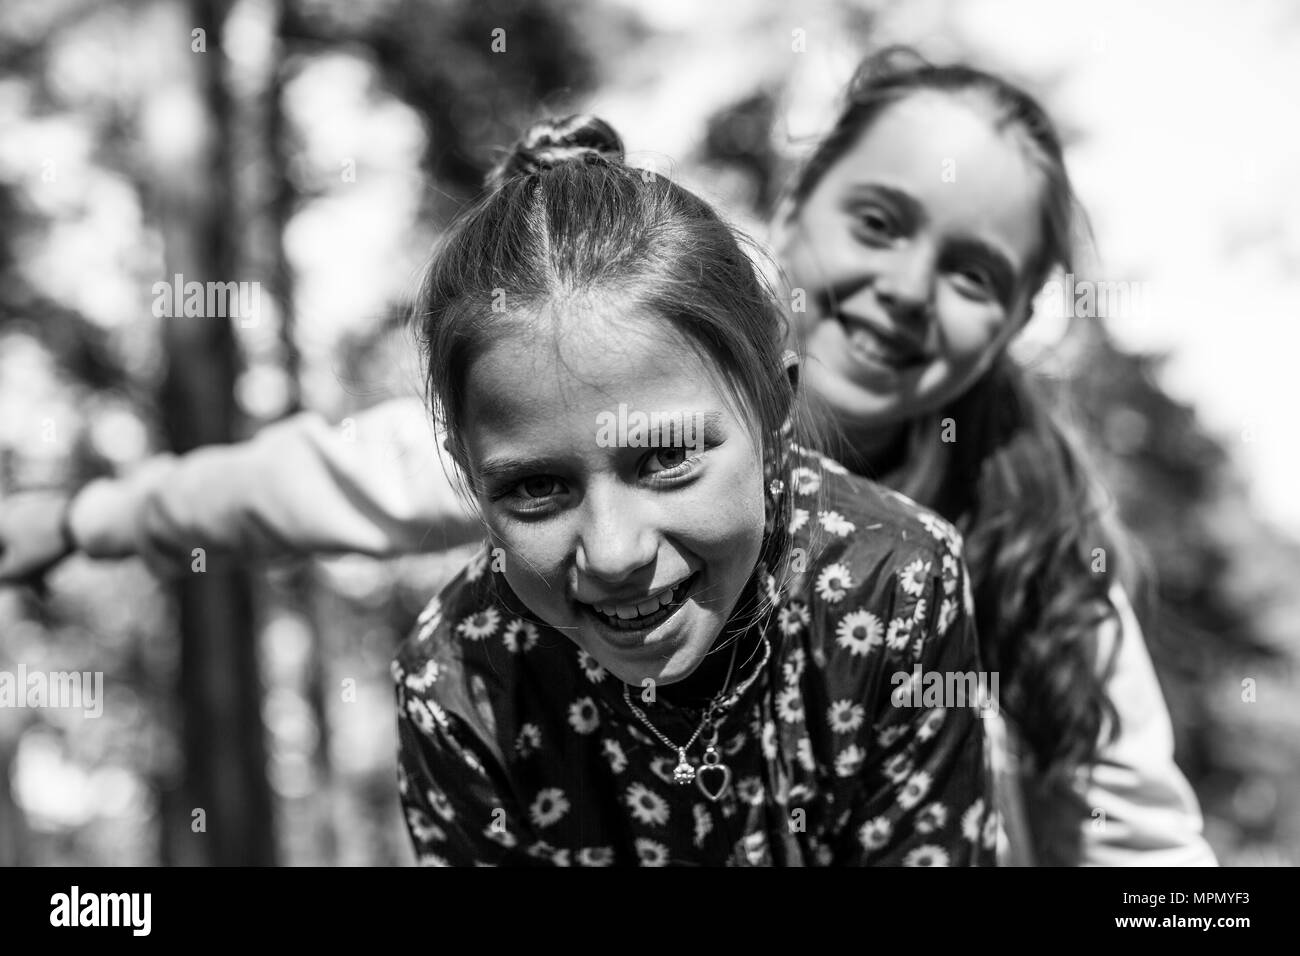 Deux filles soeurs ou amies s'amuser en plein air. Photo en noir et blanc. Banque D'Images